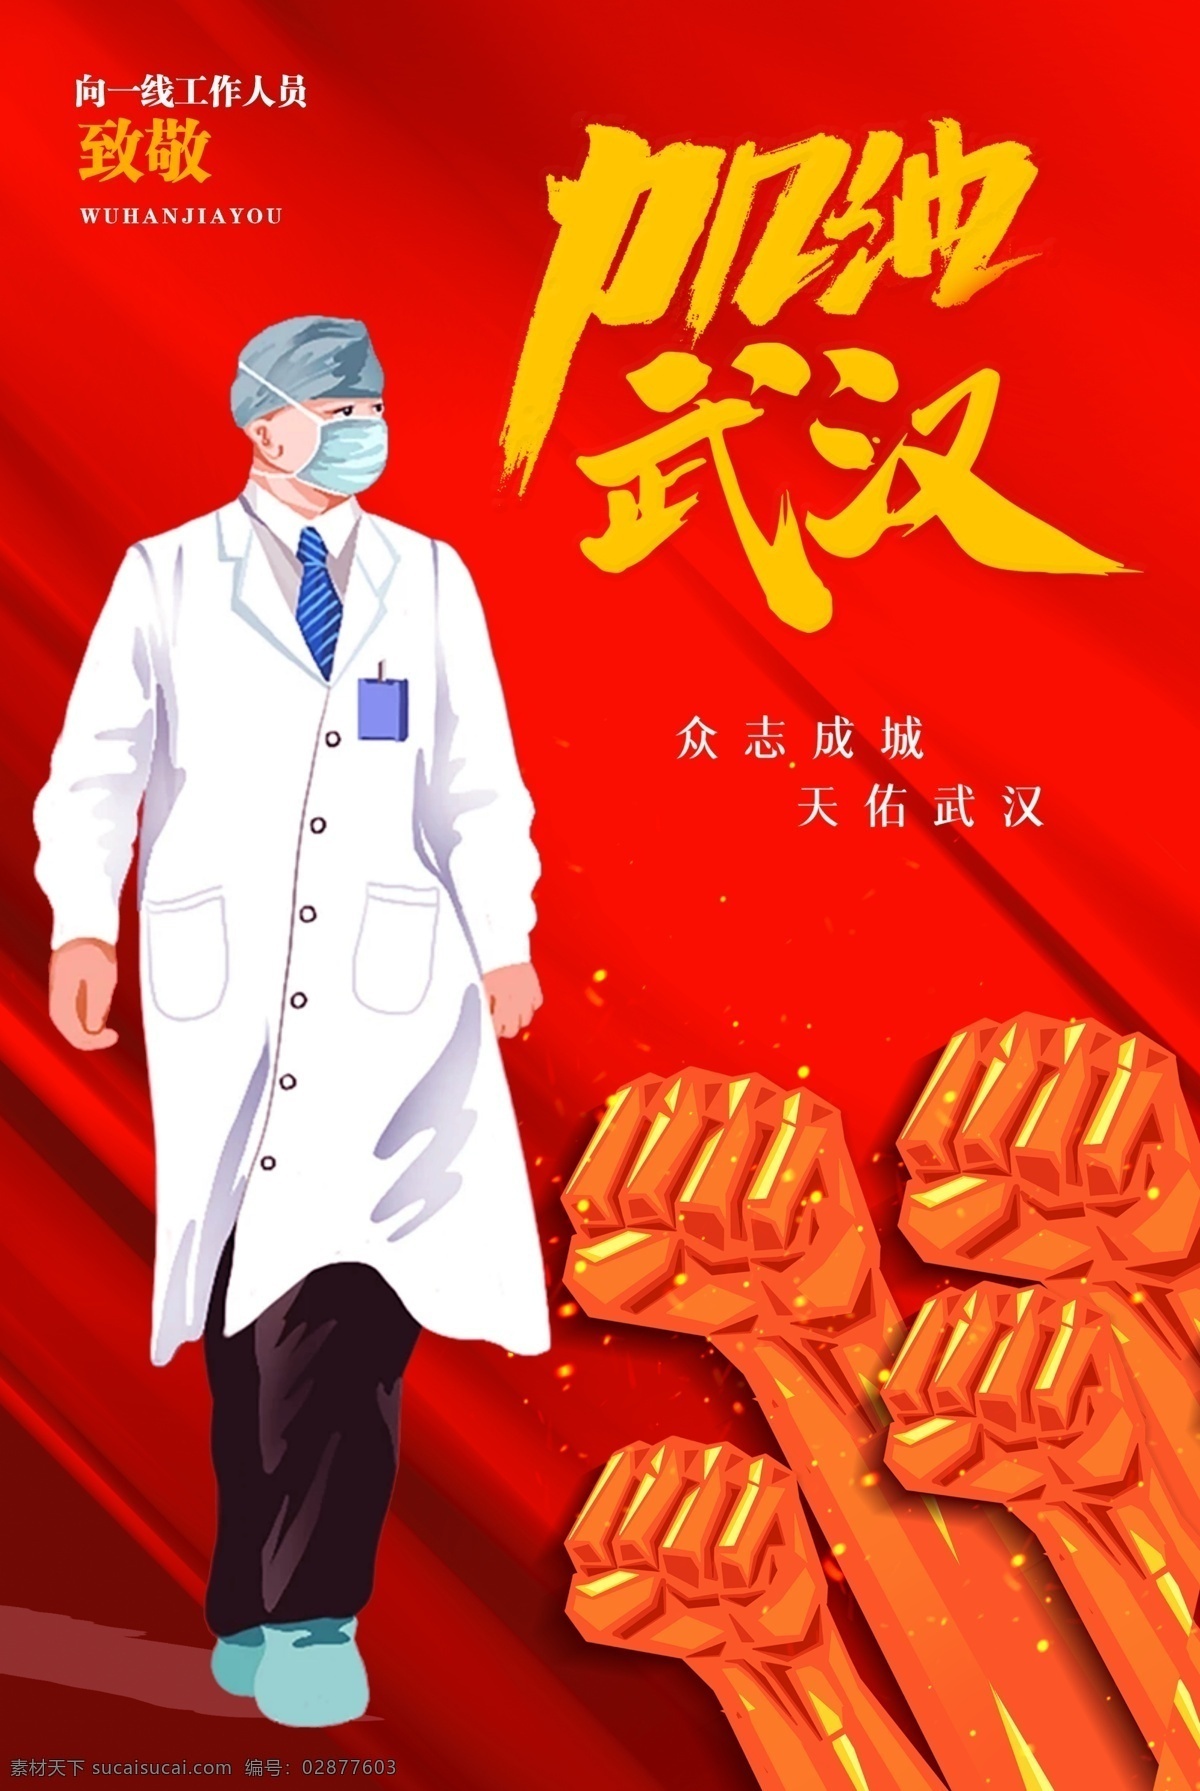 武汉加油 中国 武汉 战疫 加油 疫情 海报 广告 齐心协力 团结 医生 英雄 海报类